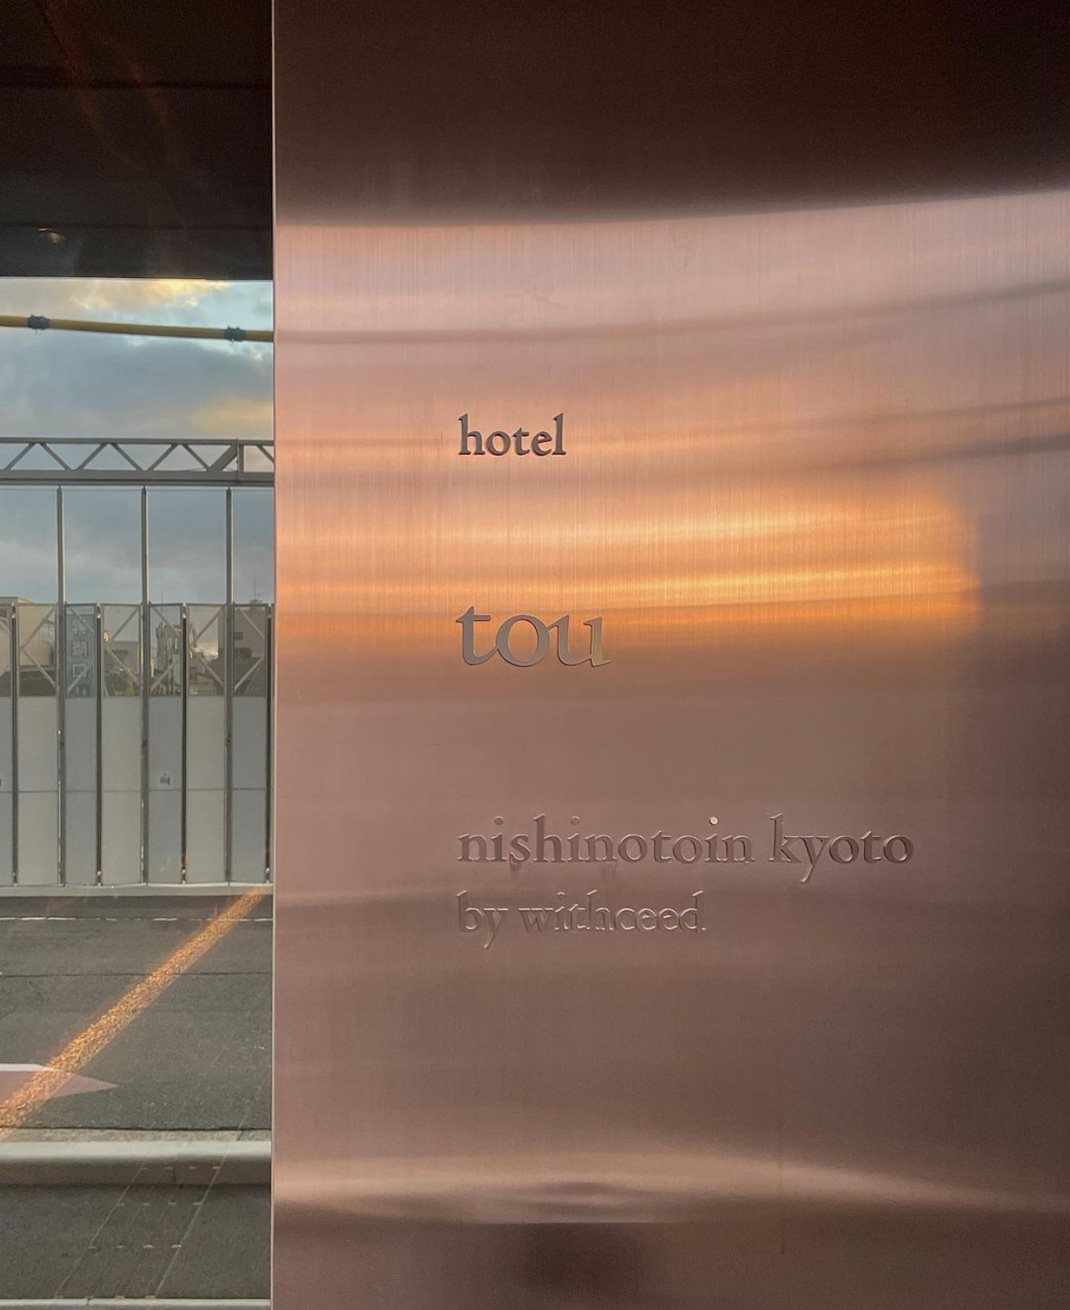 酒店餐厅hotel tou nishinotoin kyoto 日本 酒店餐厅 金色 石头 logo设计 vi设计 空间设计